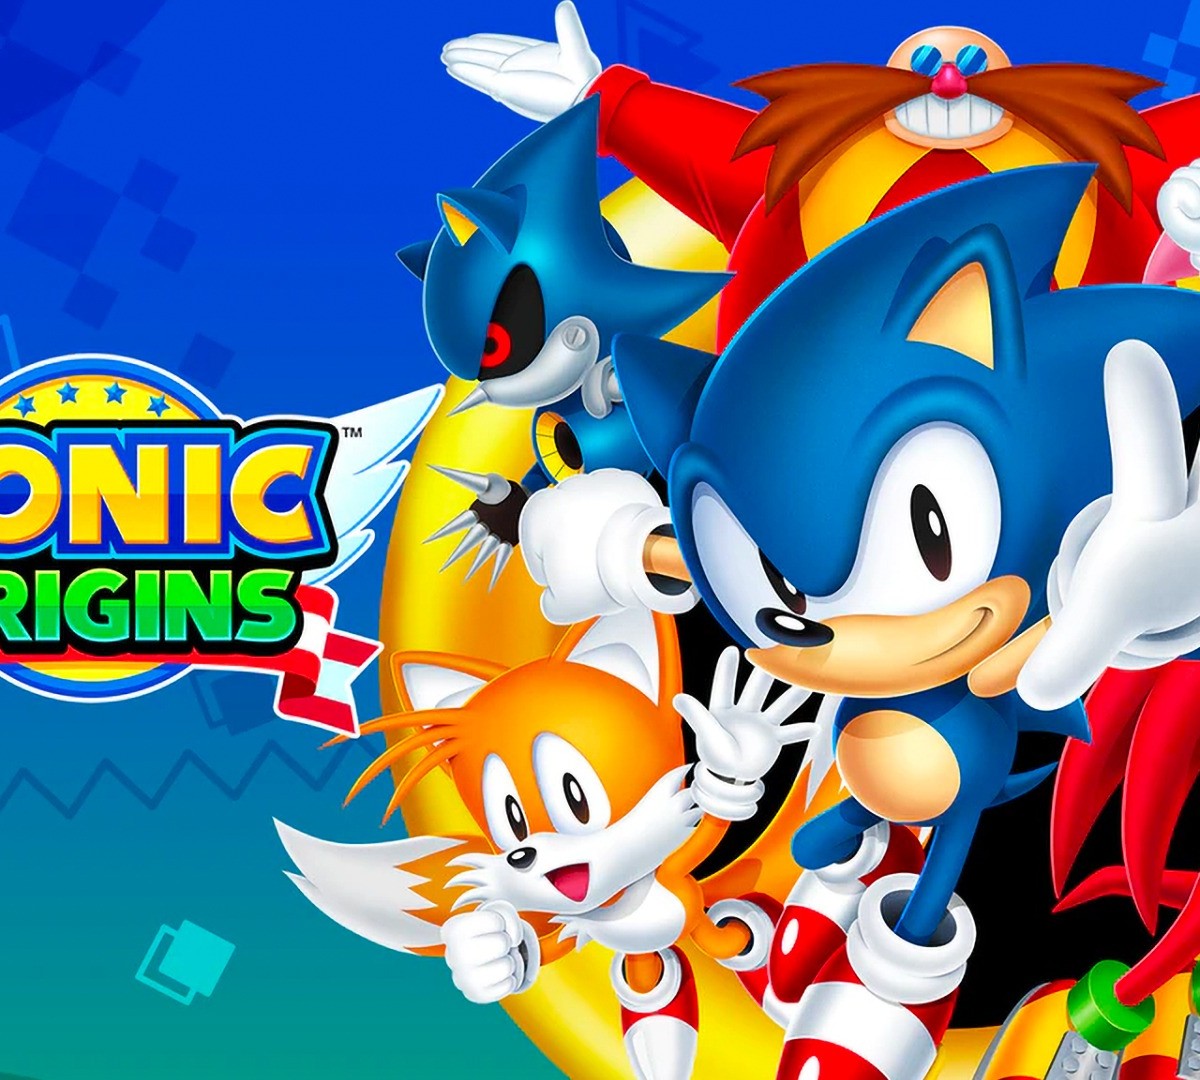 Sonic Origins recebe classificação indicativa na Coreia